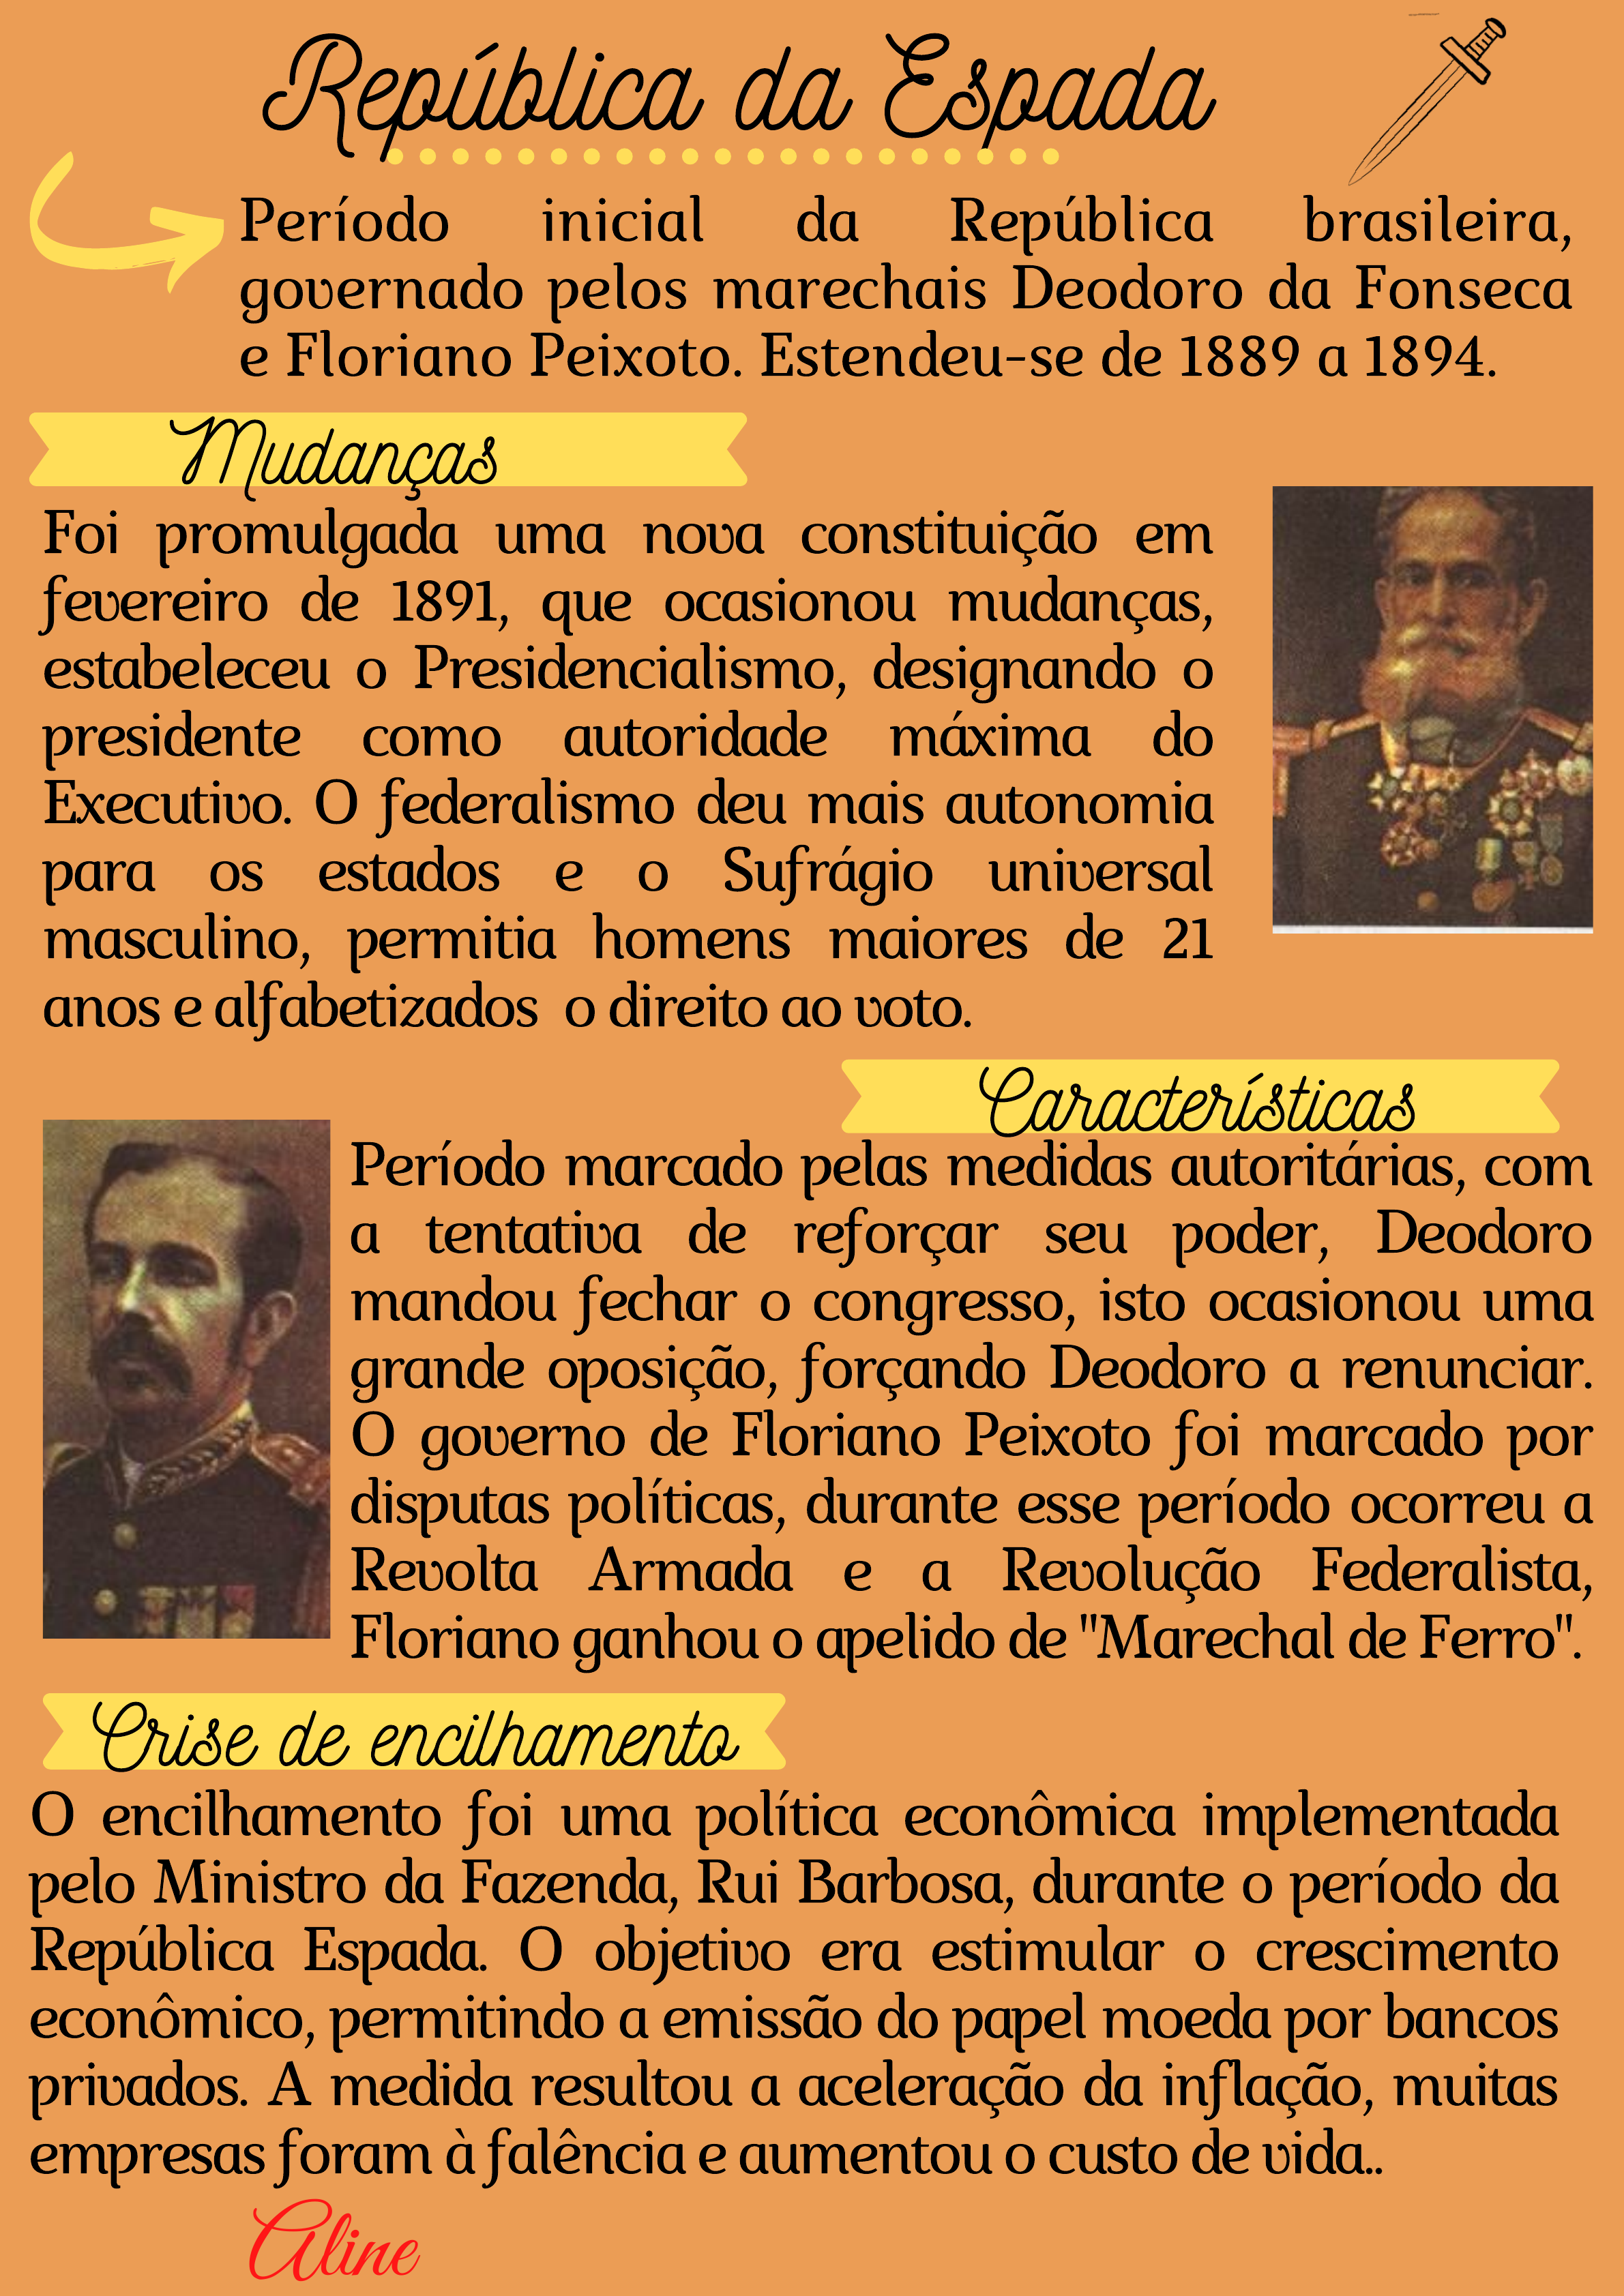 República da Espada (1889-1894) - História do Mundo